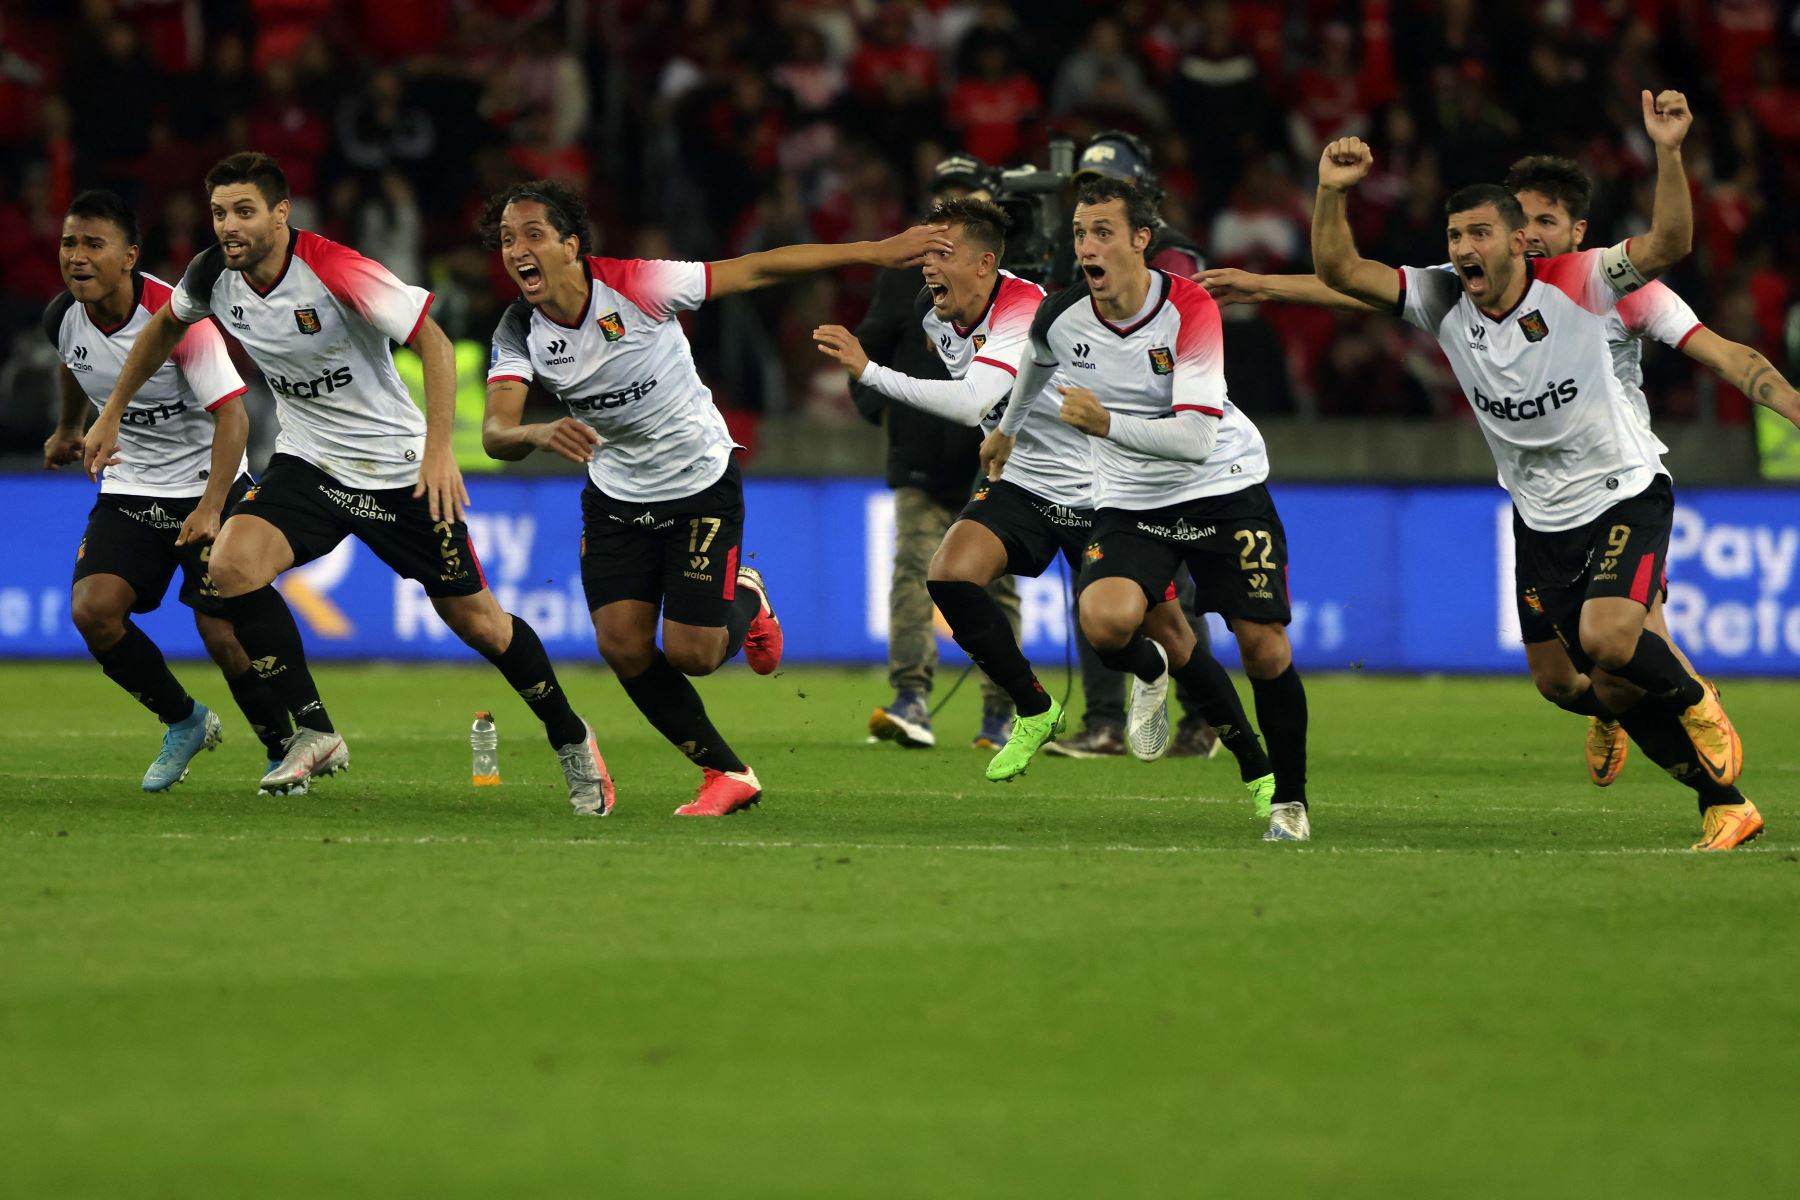 Los jugadores de Melgar de Perú celebran después de derrotar al Internacional de Brasil en la tanda de penaltis en su partido de vuelta de cuartos de final del torneo de fútbol de la Copa Sudamericana, en el estadio Beira-Rio en Porto Alegre, Brasil. Foto: AFP